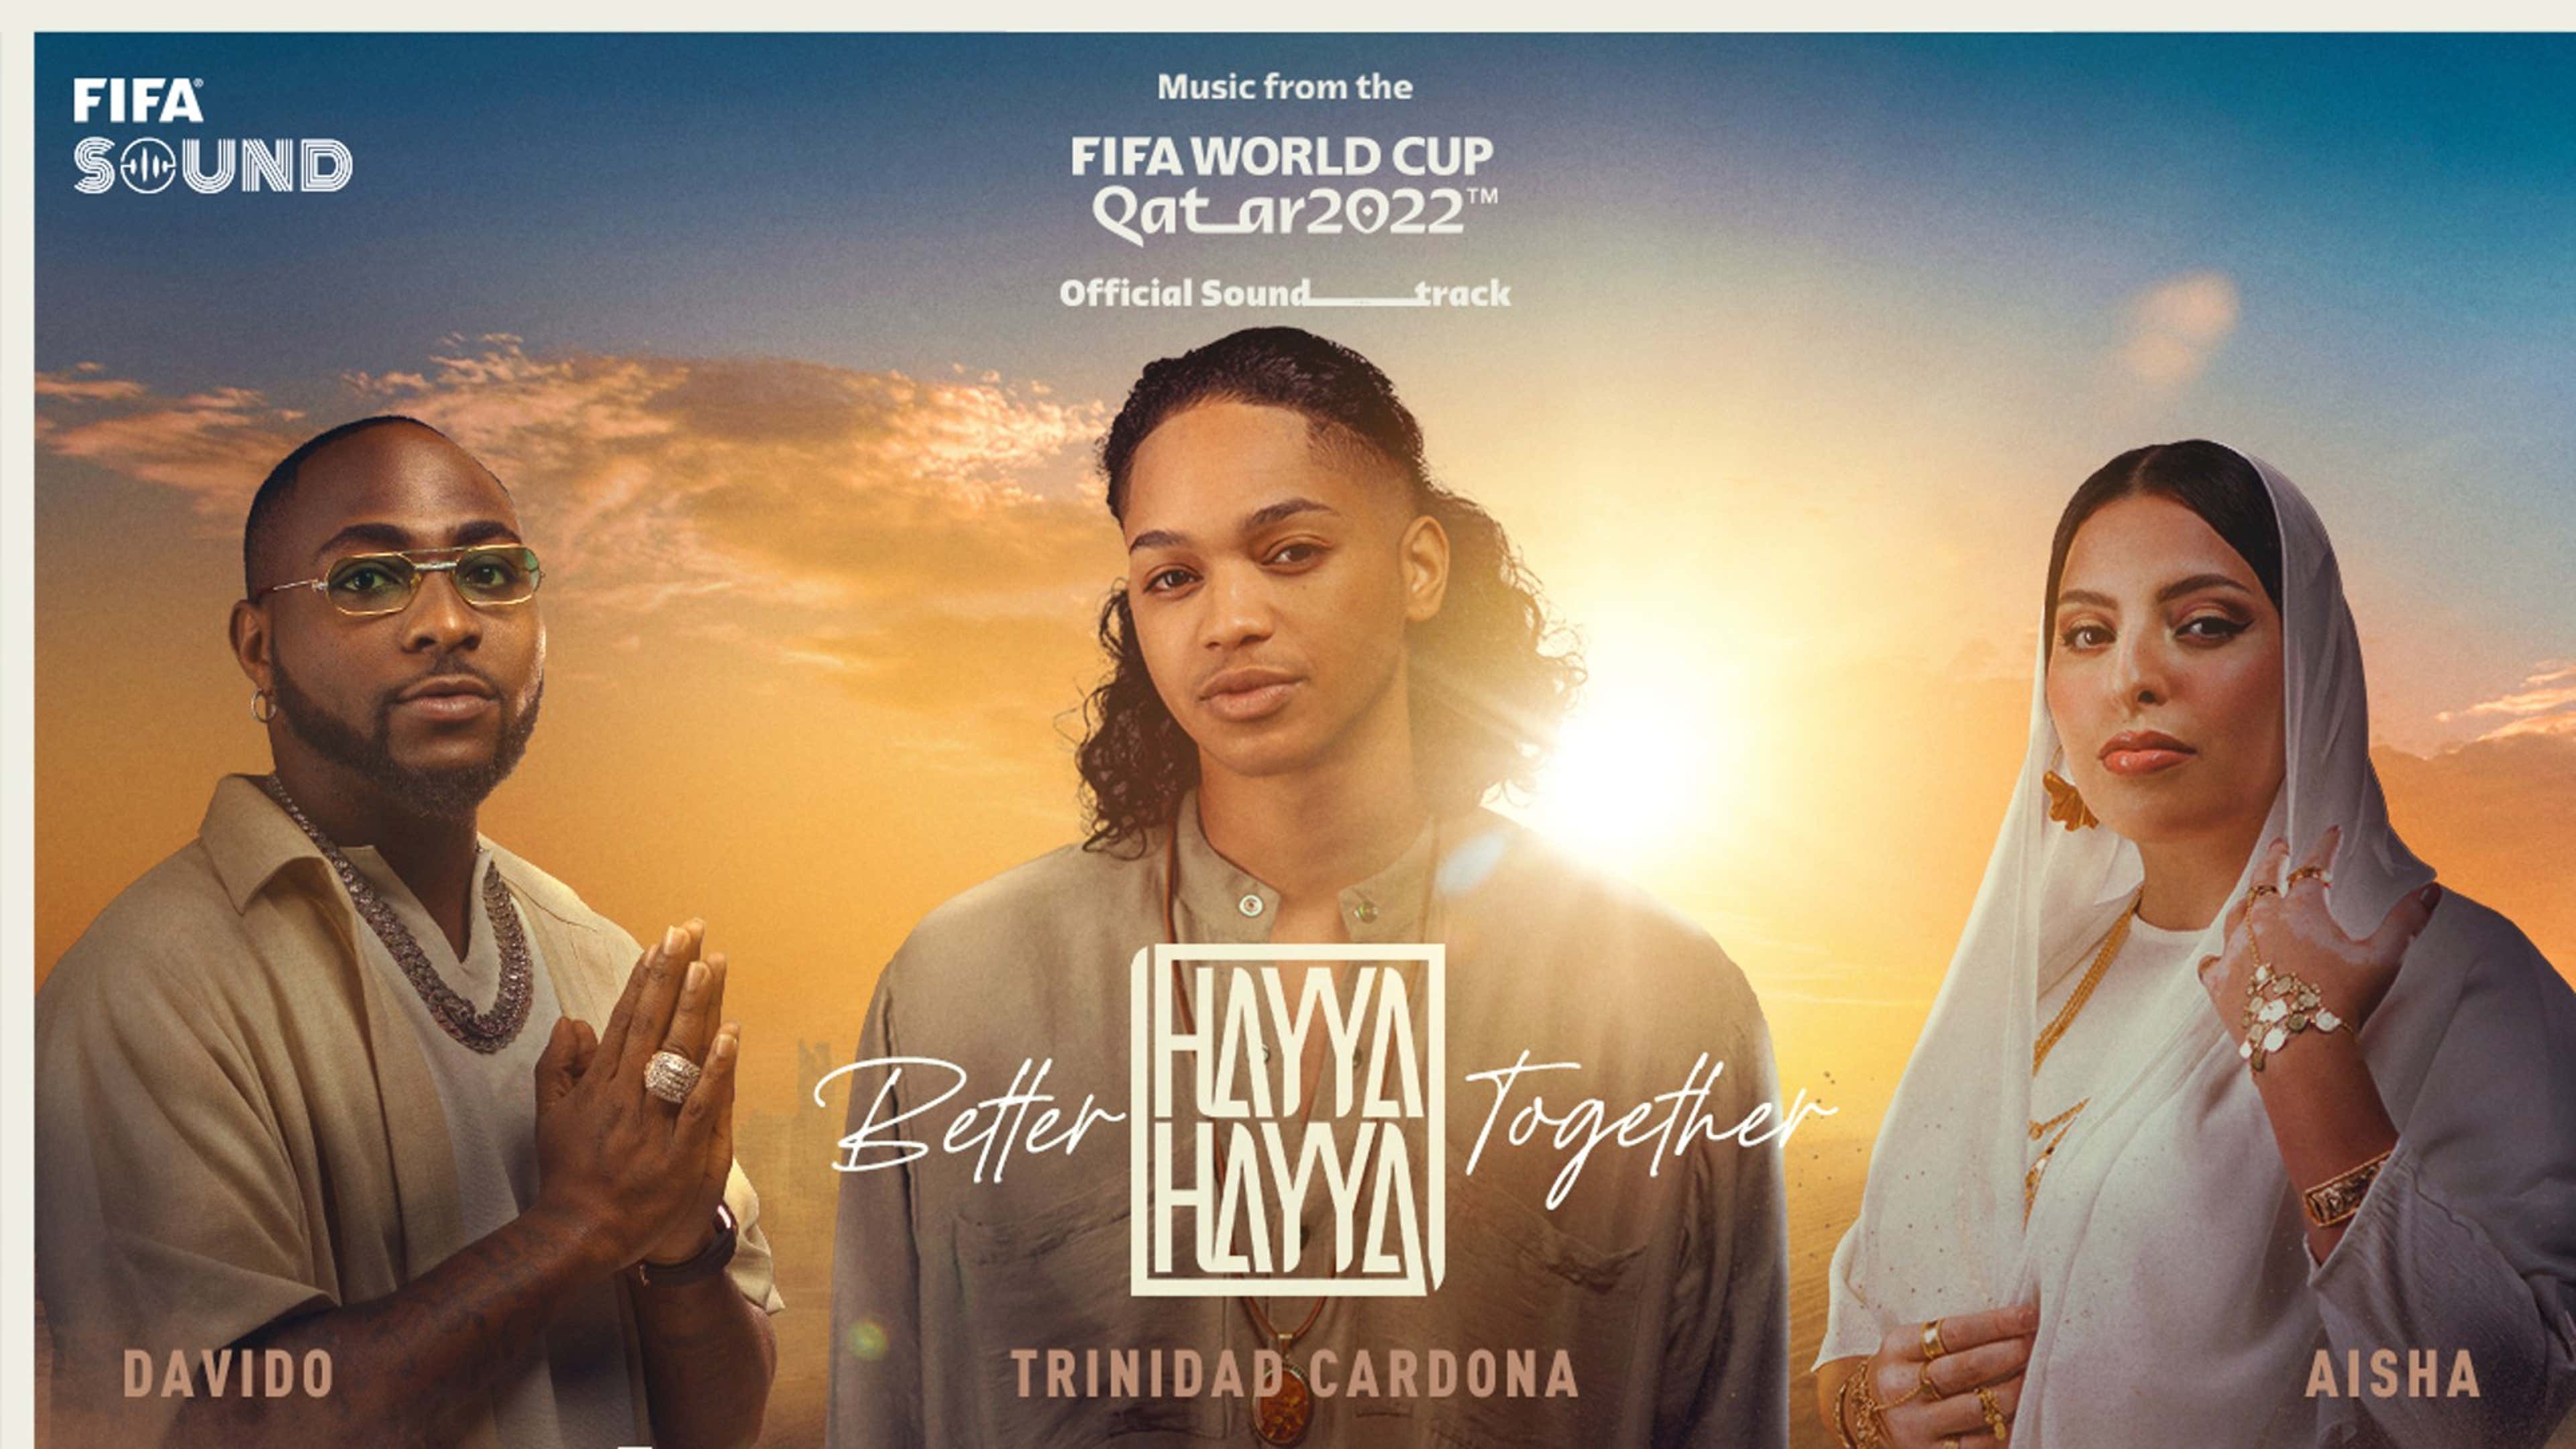 Hayya Hayya (Better Together) FIFA 2022 World Cup song Aisha Davido Trinidad Cardona